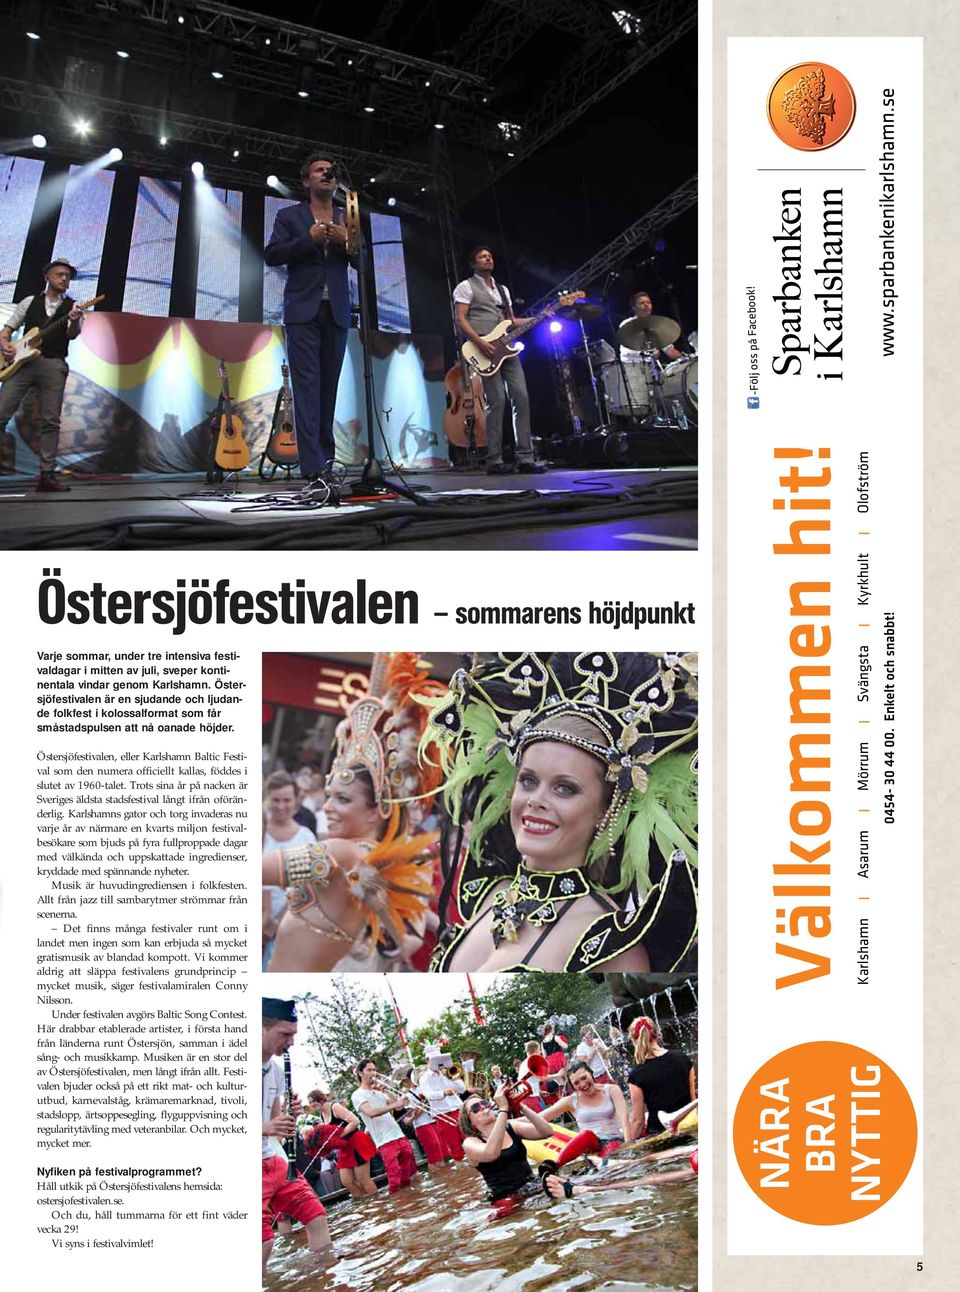 Östersjöfestivalen, eller Karlshamn Baltic Festival som den numera officiellt kallas, föddes i slutet av 1960-talet. Trots sina år på nacken är Sveriges äldsta stadsfestival långt ifrån oföränderlig.